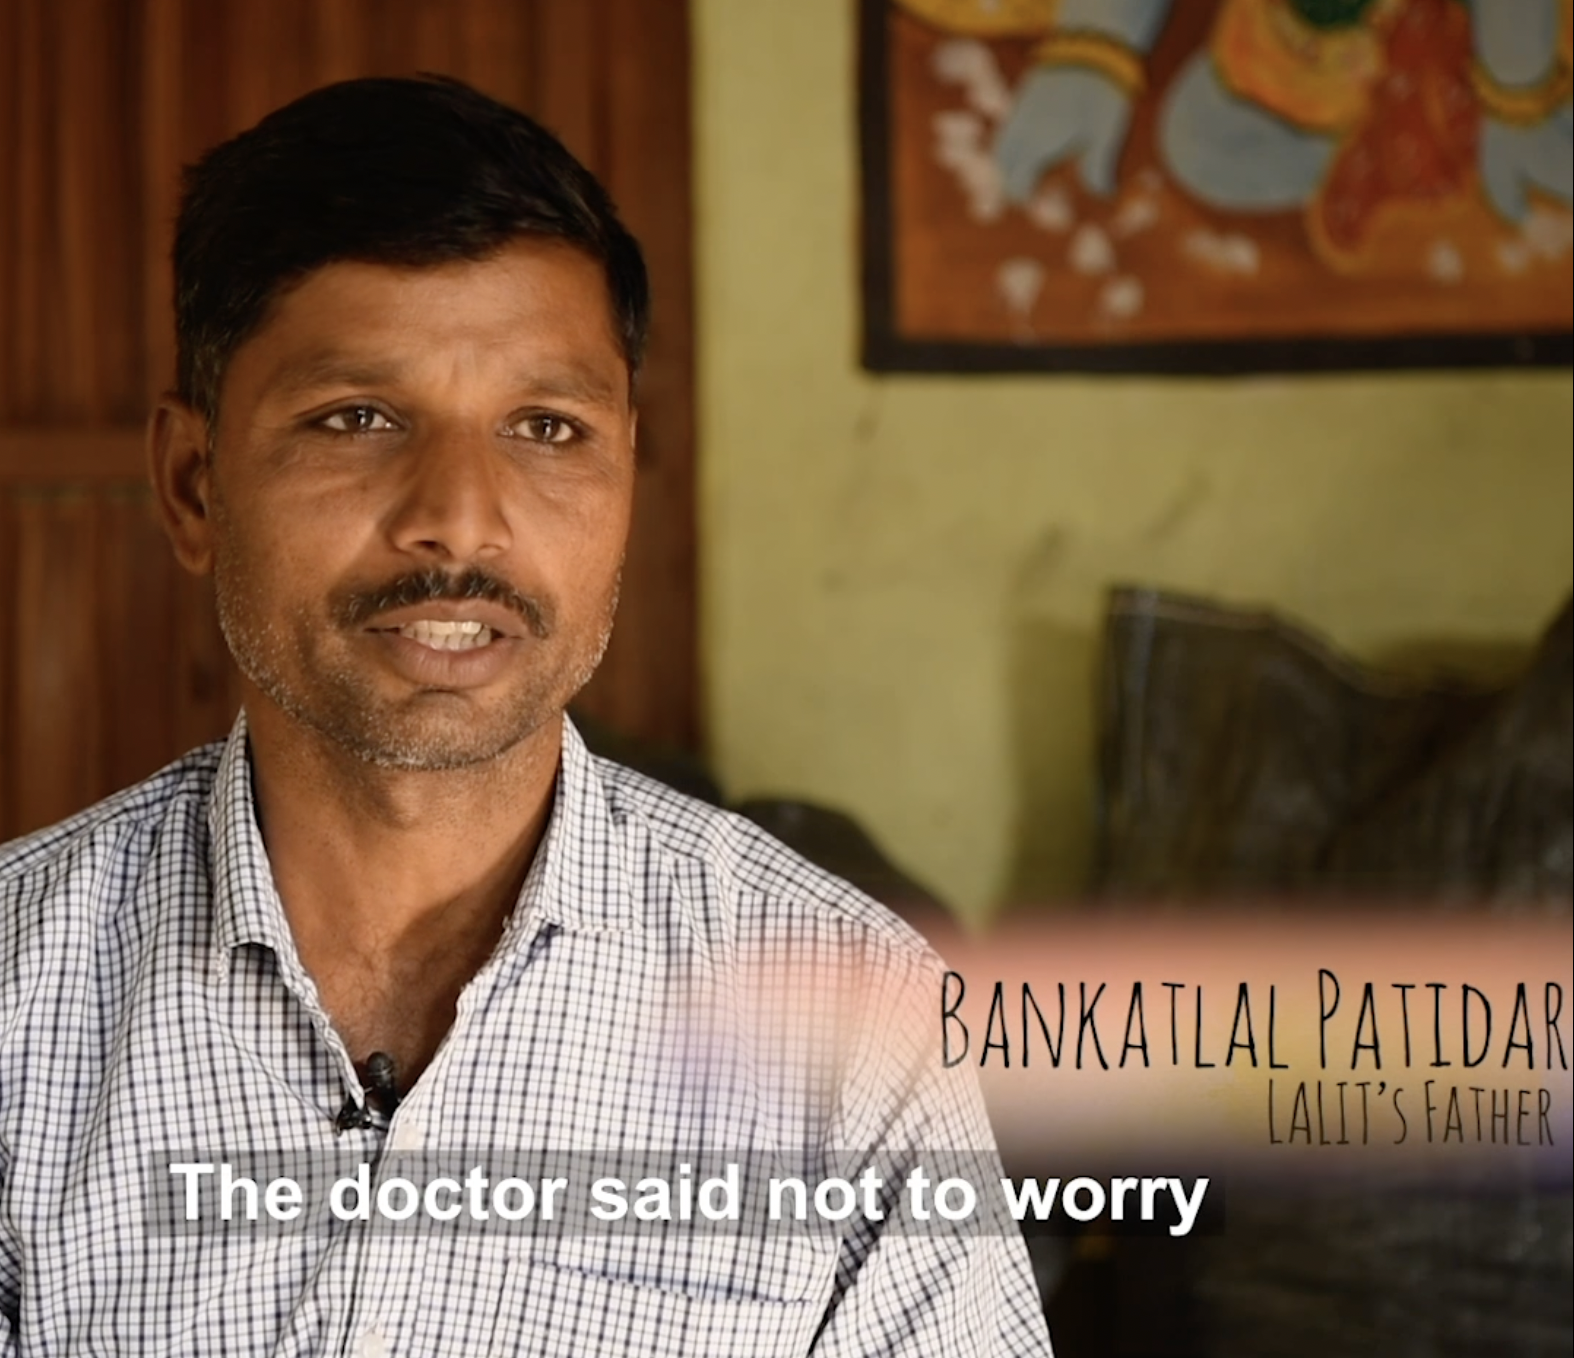 Bankatlala Patidar parle de l'état de santé de son fils Lalit Patidar sur une vidéo Facebook de Born Different le 9 mai 2020 | Source : Facebook/Born Different